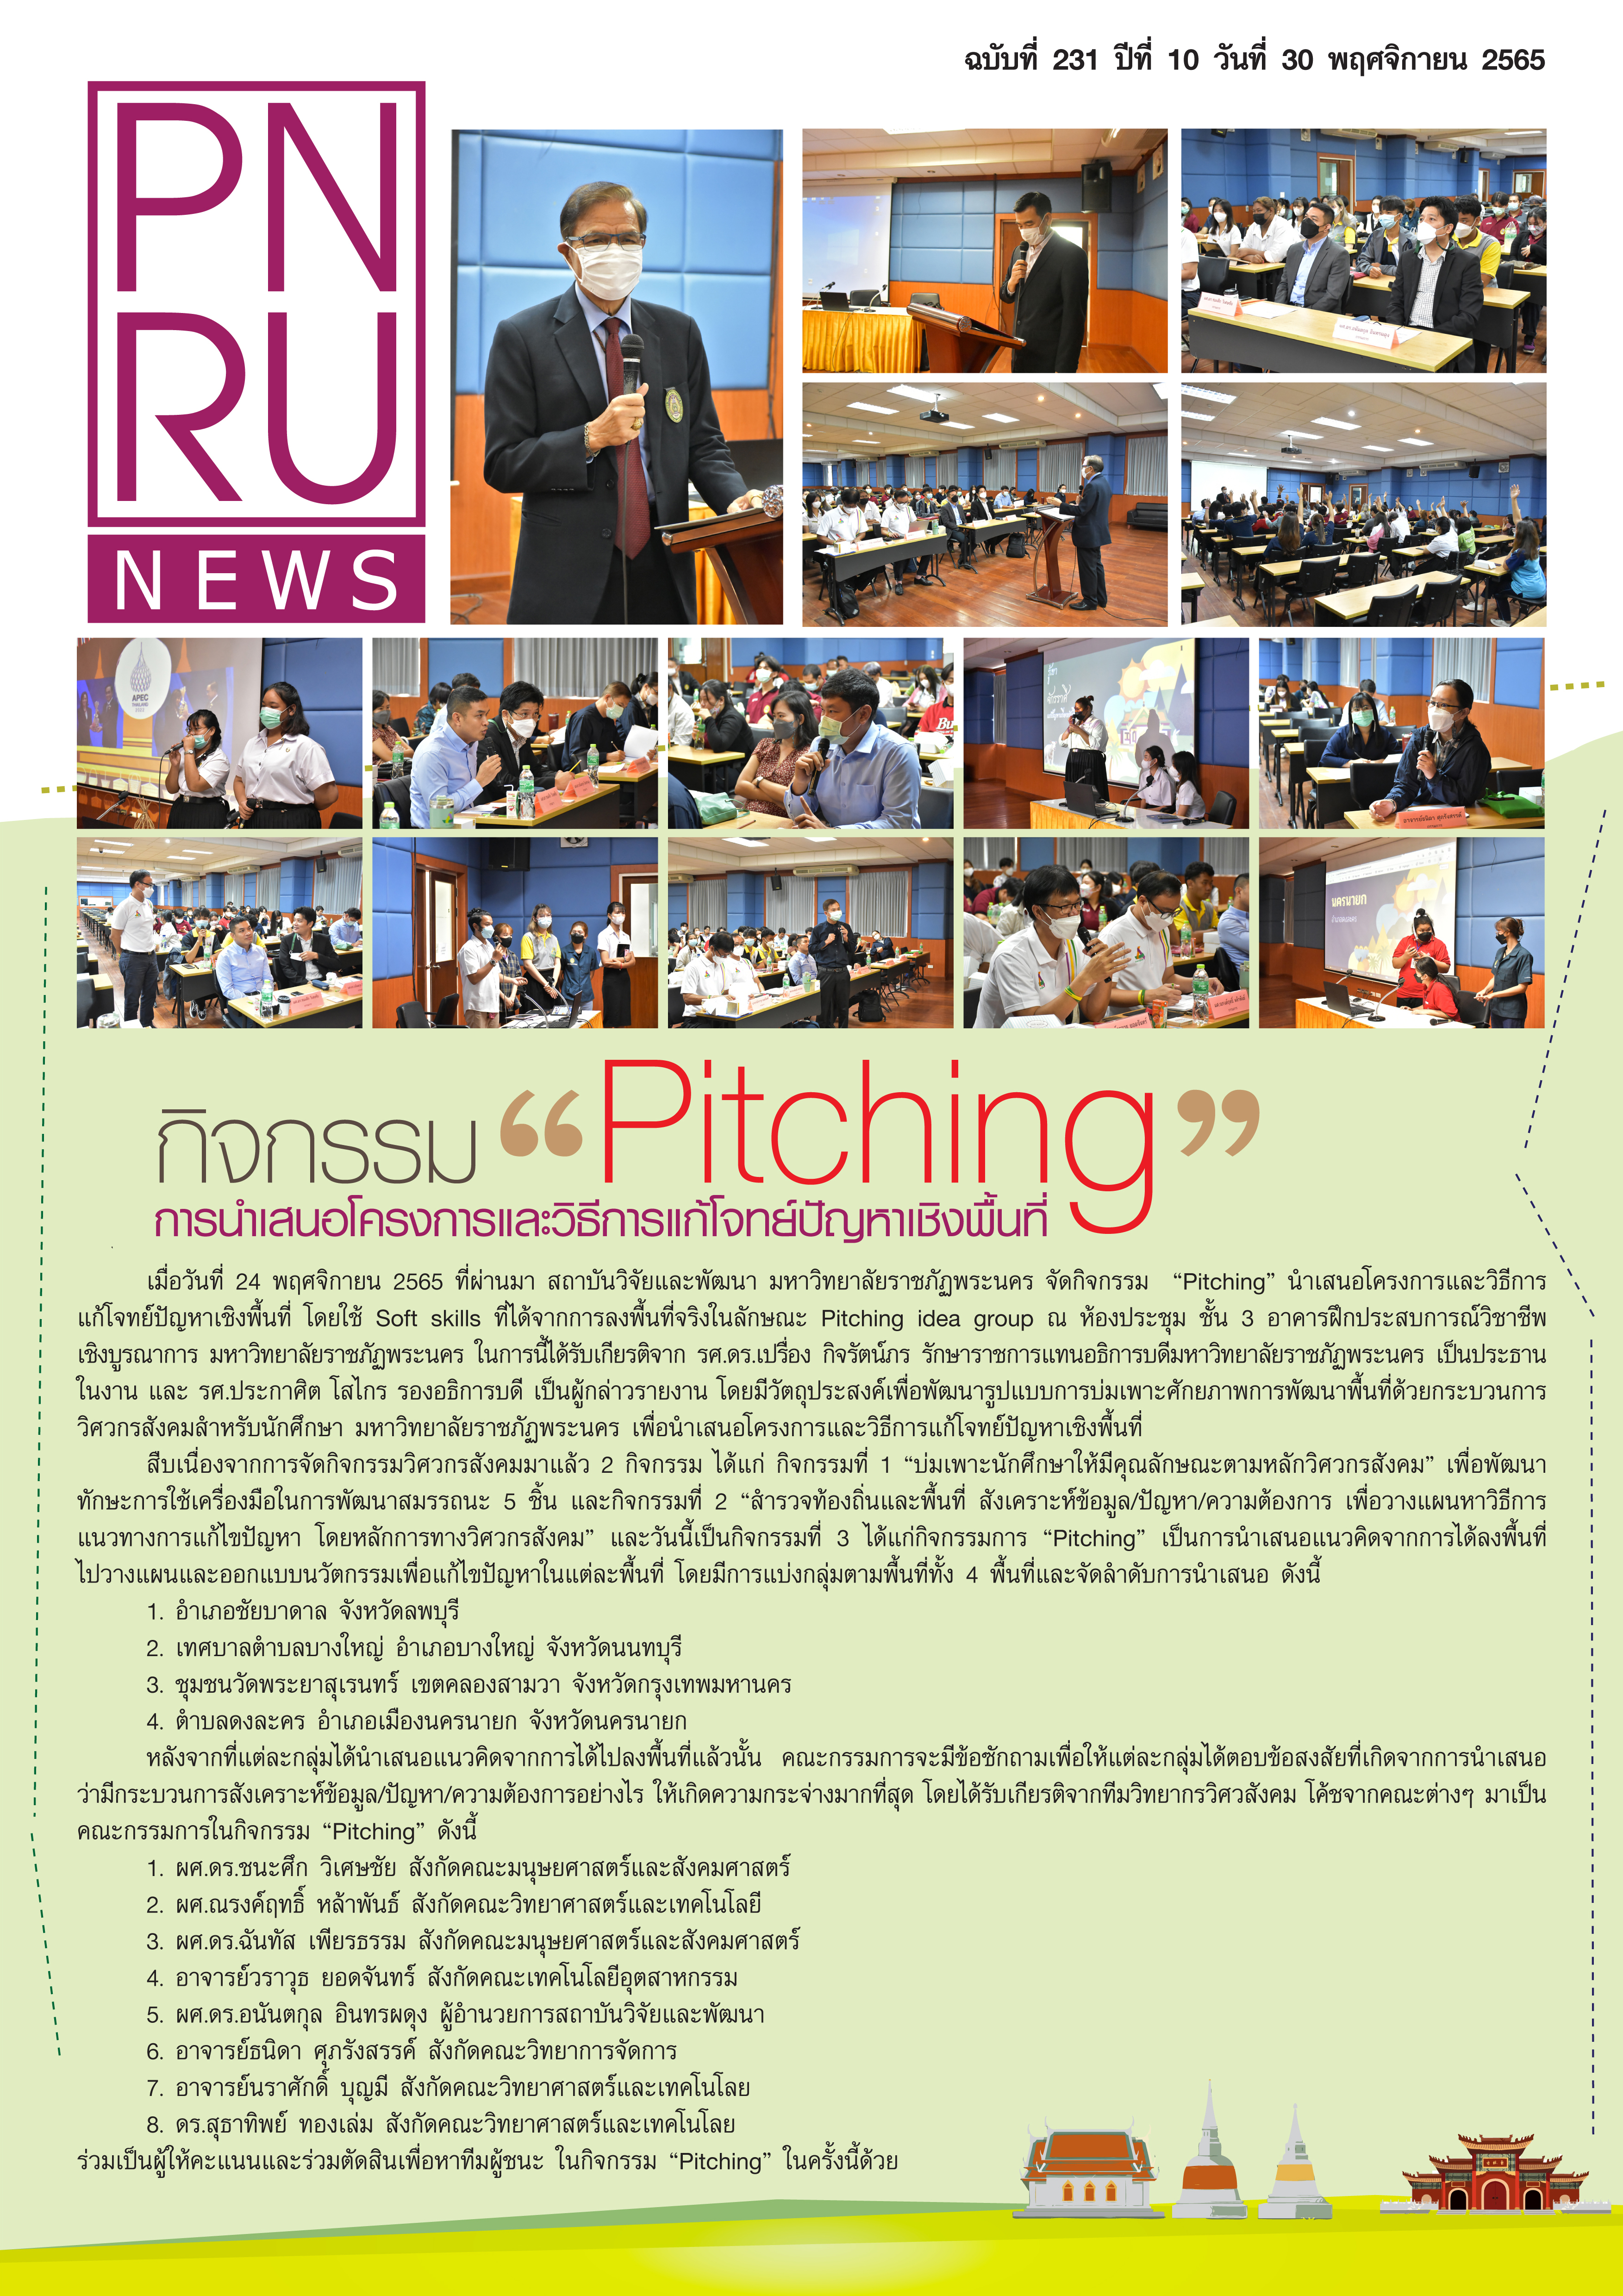 PNRU NEWS (231) : โครงการวิศวกรสังคม กิจกรรม "Pitching นำเสนอโครงการและวิธีการแก้โจทย์ปัญหาเชิงพื้นที่"